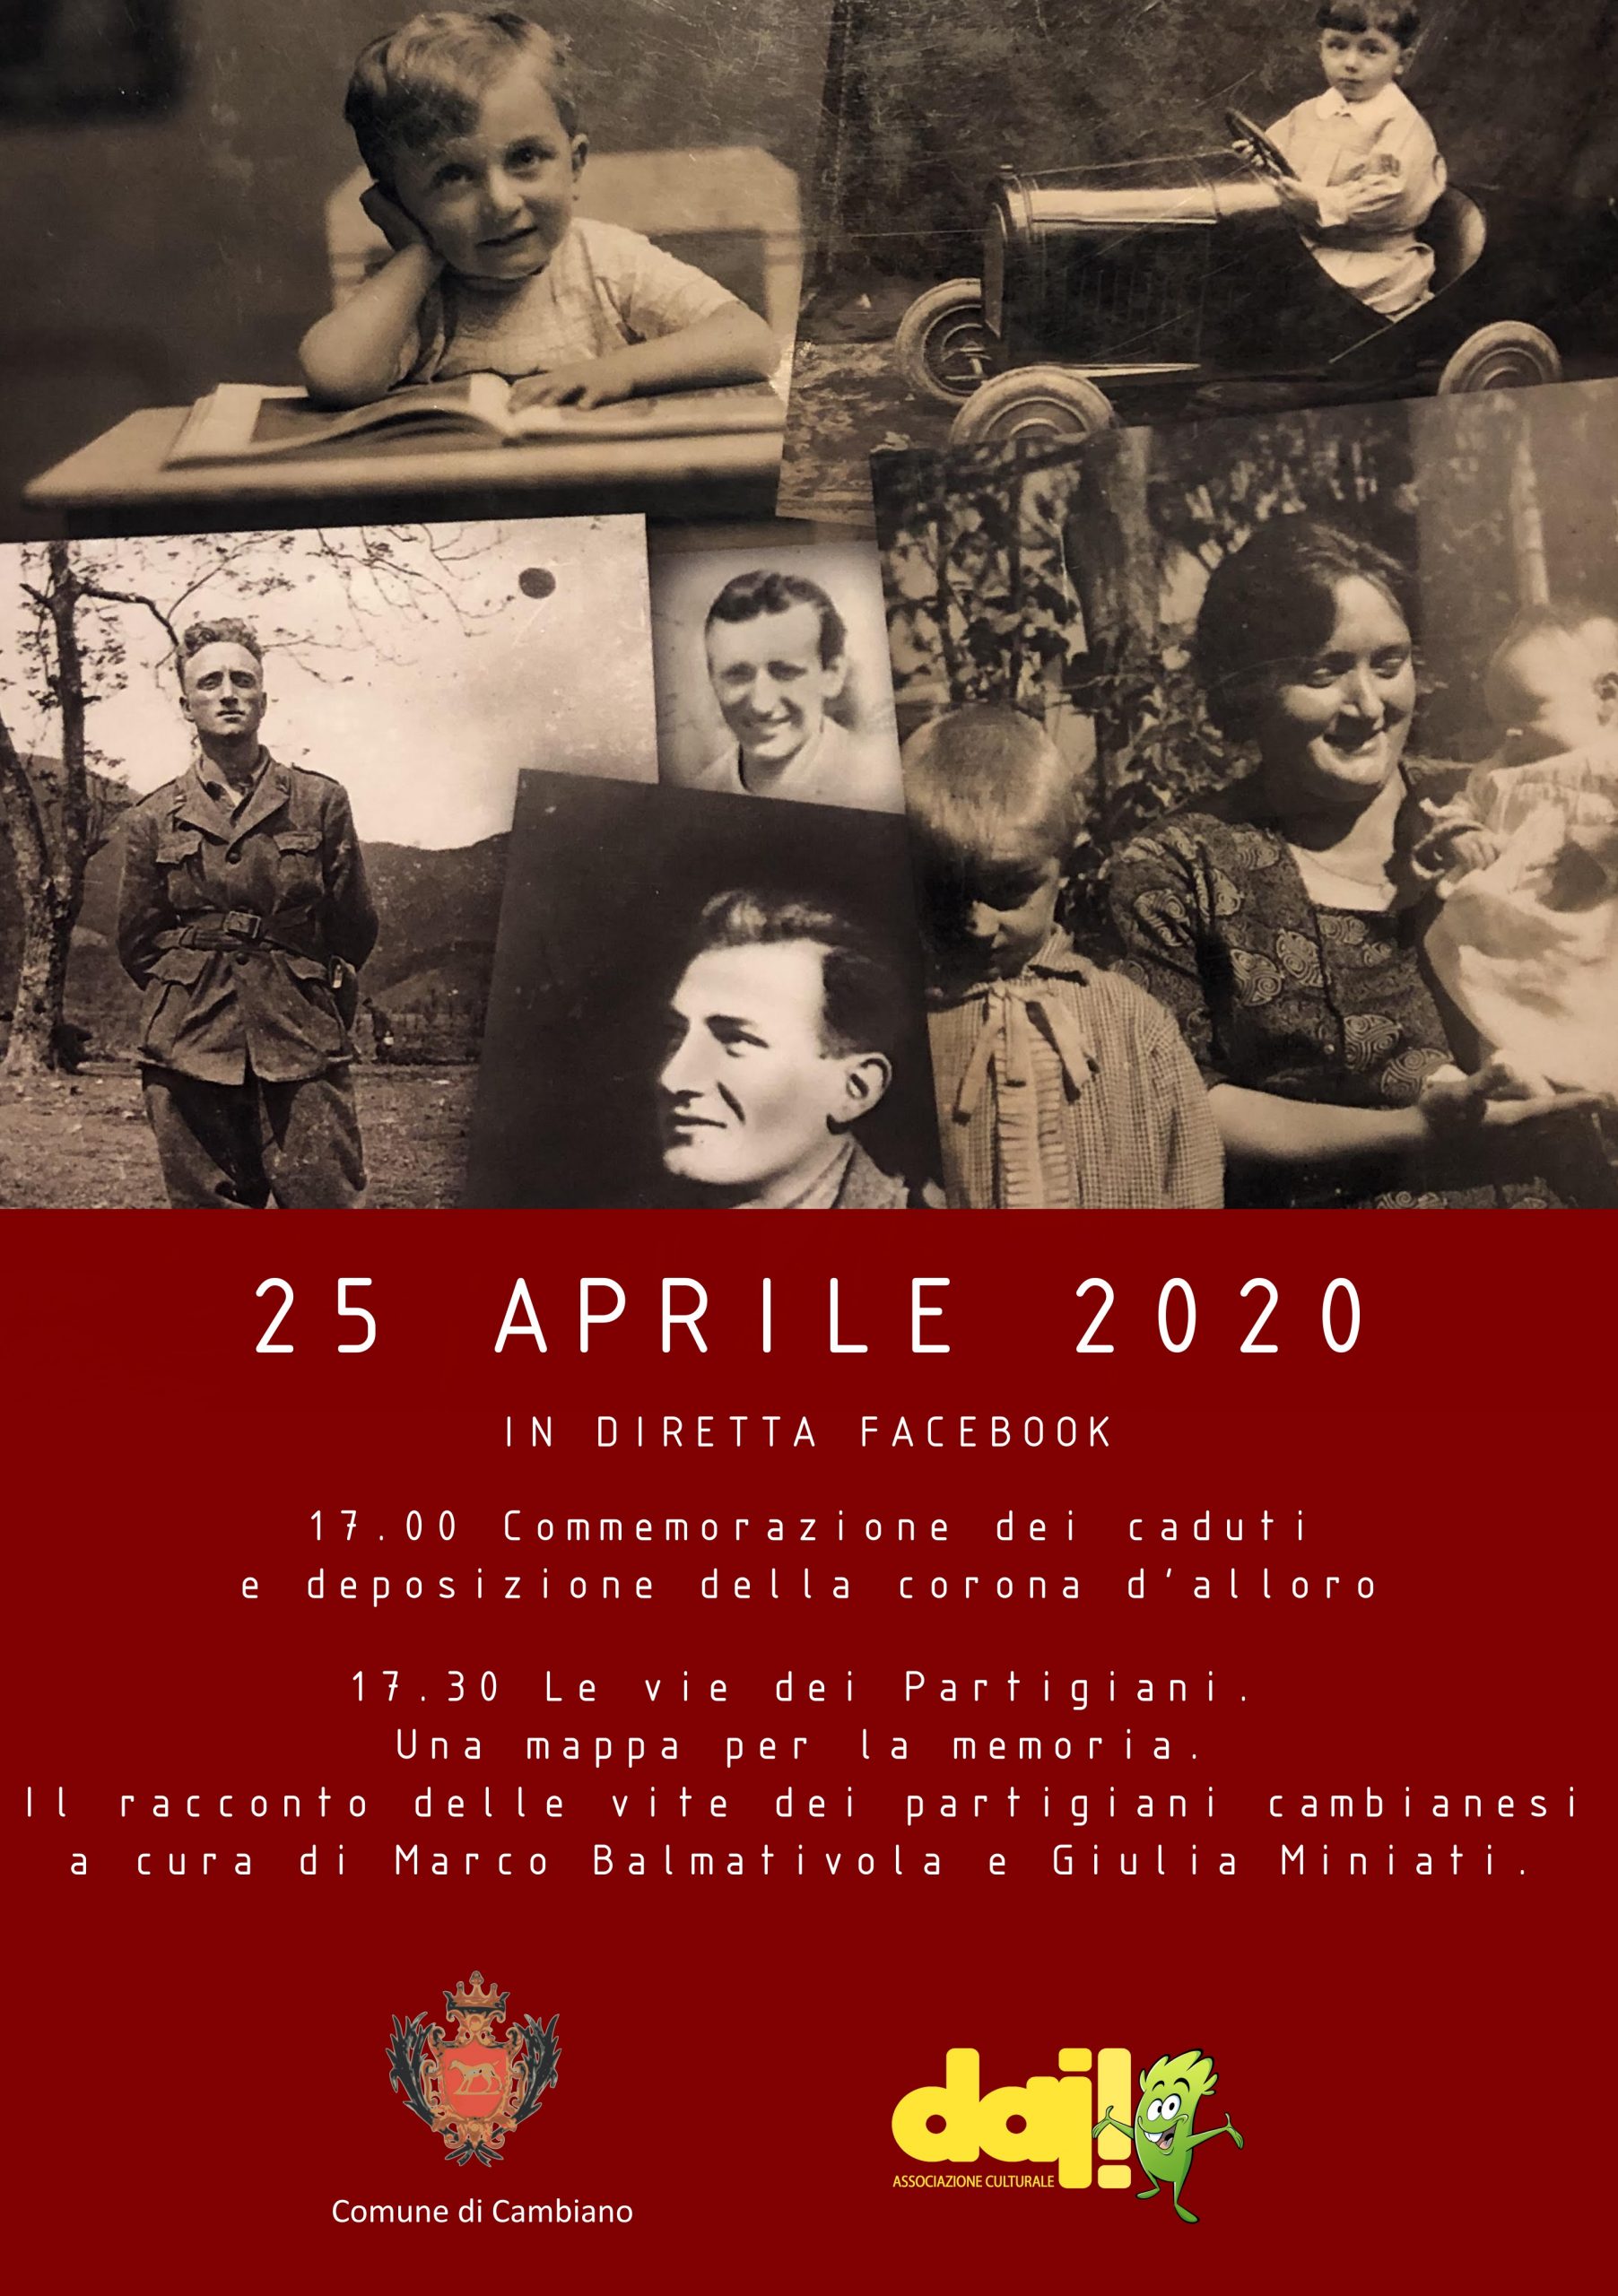 25 aprile – Festa della liberazione d’Italia